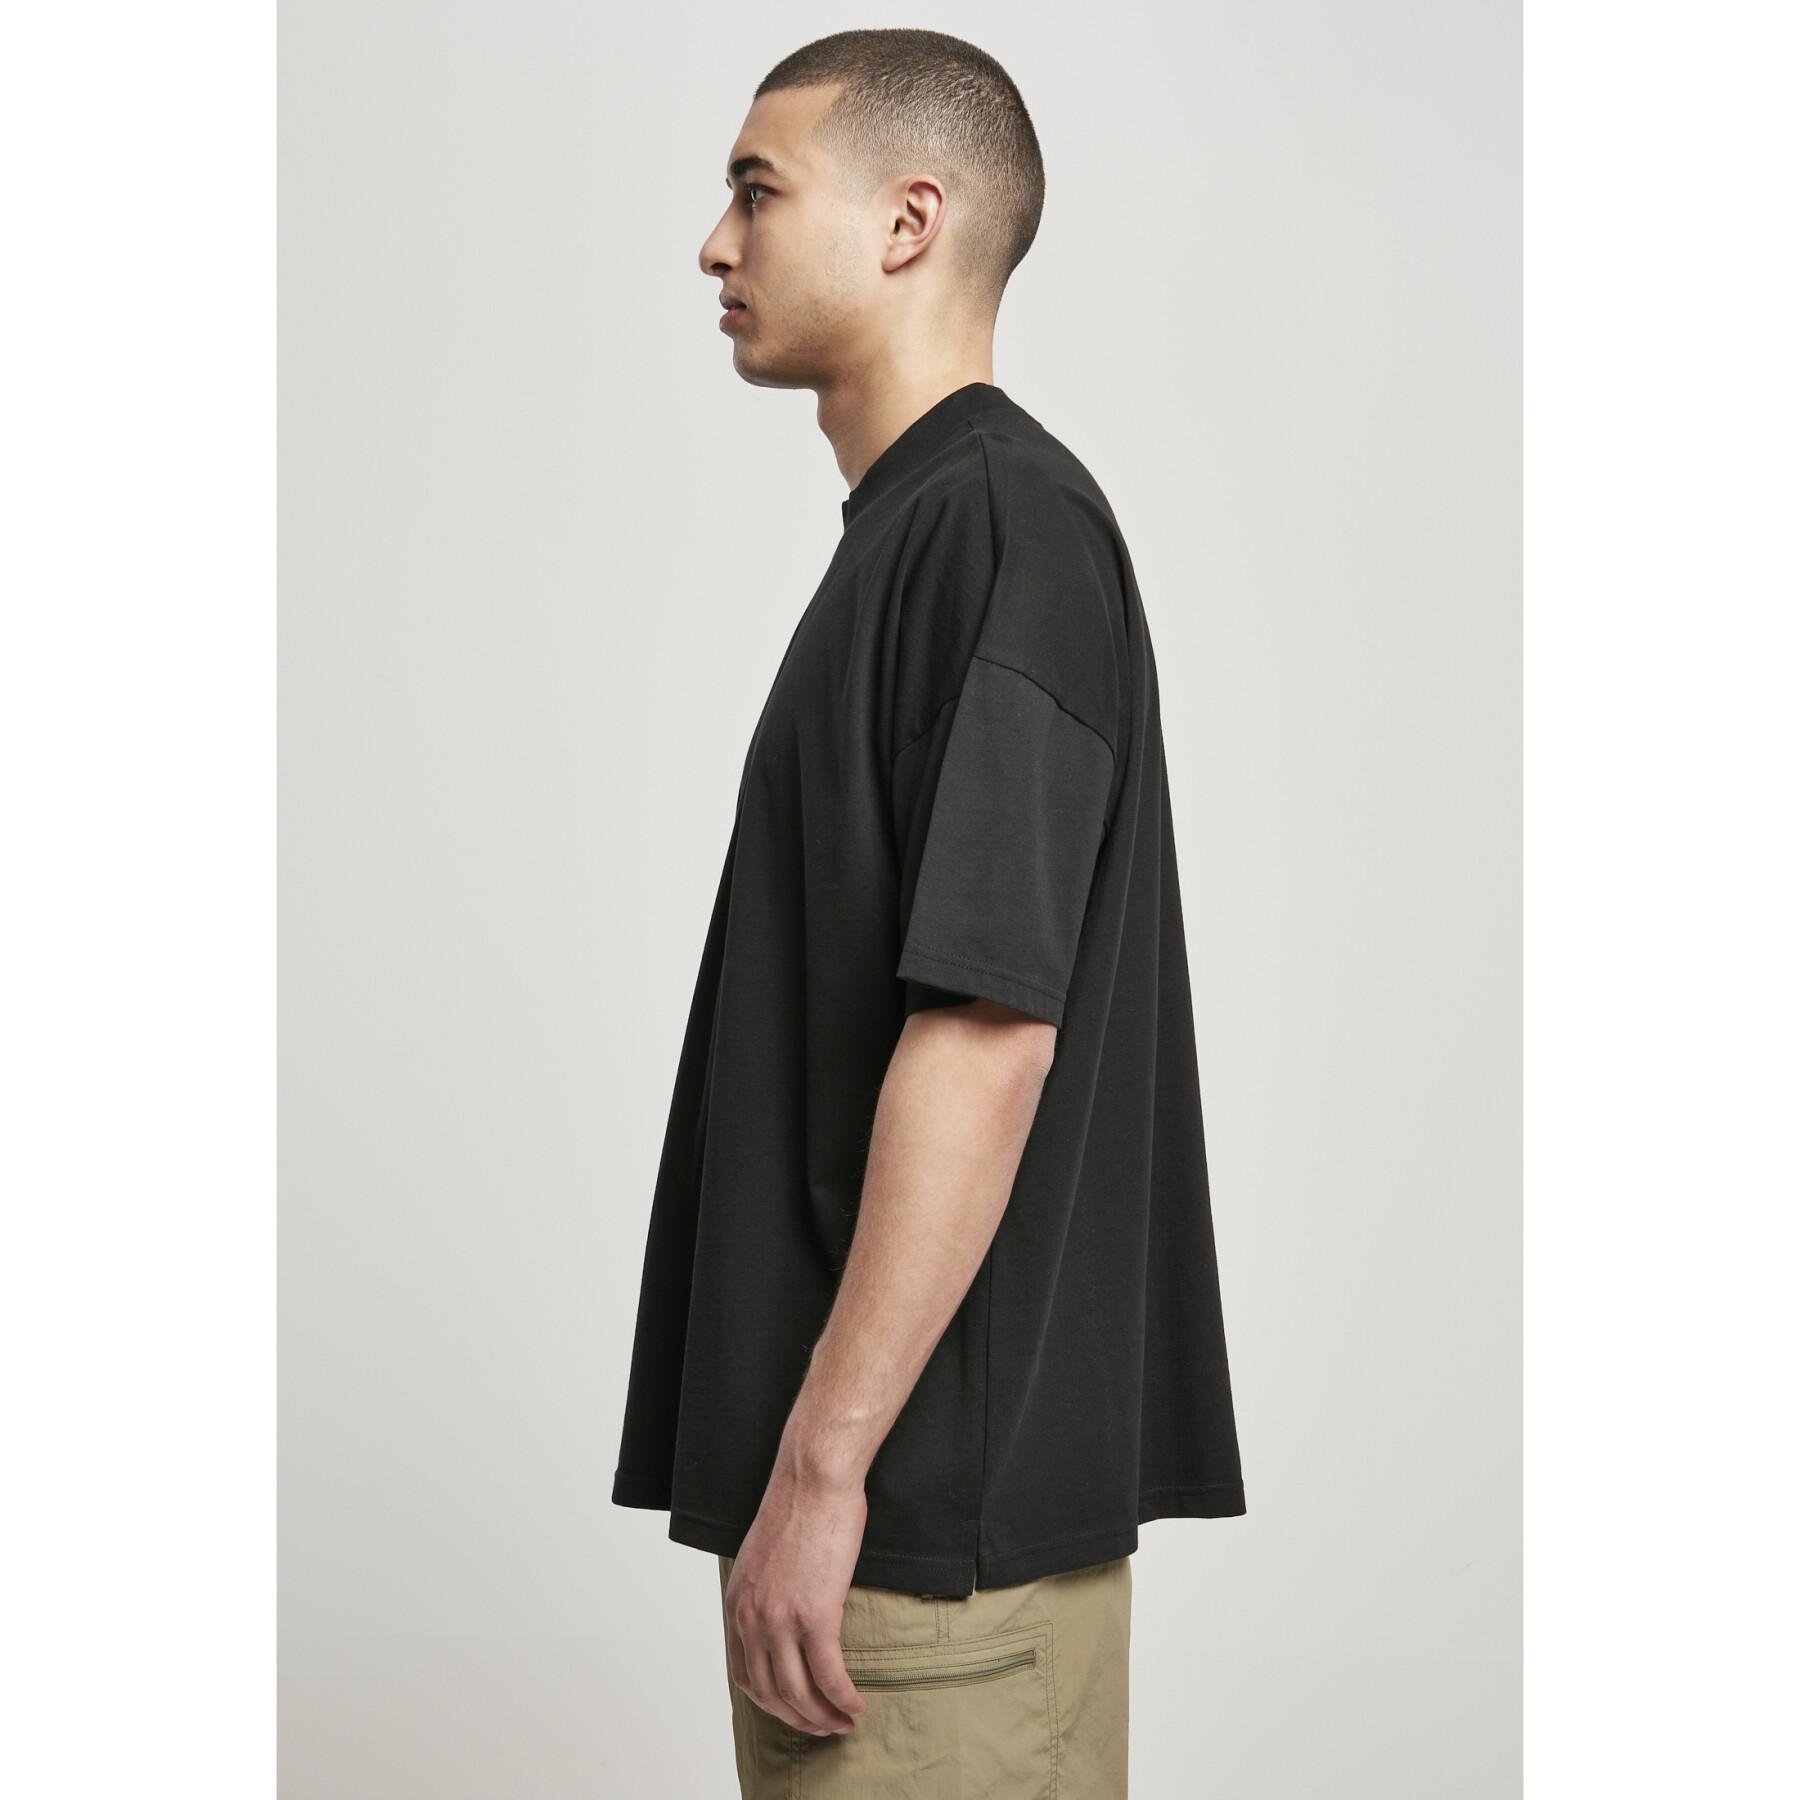 T-shirt Urban Classics oversized mock neck (large sizes)